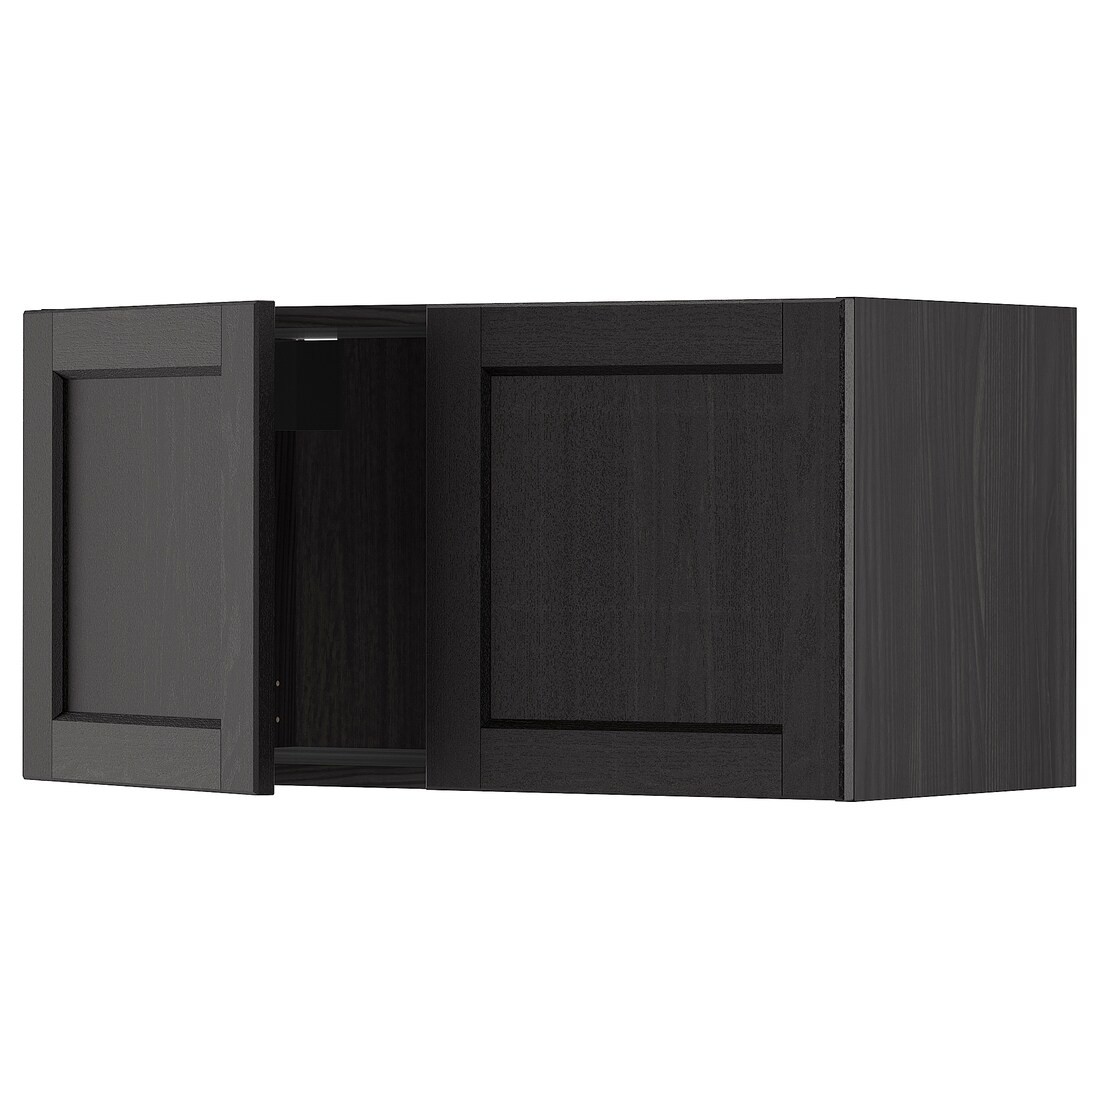 METOD МЕТОД Навесной шкаф с 2 дверями, черный / Lerhyttan черная морилка, 80x40 см